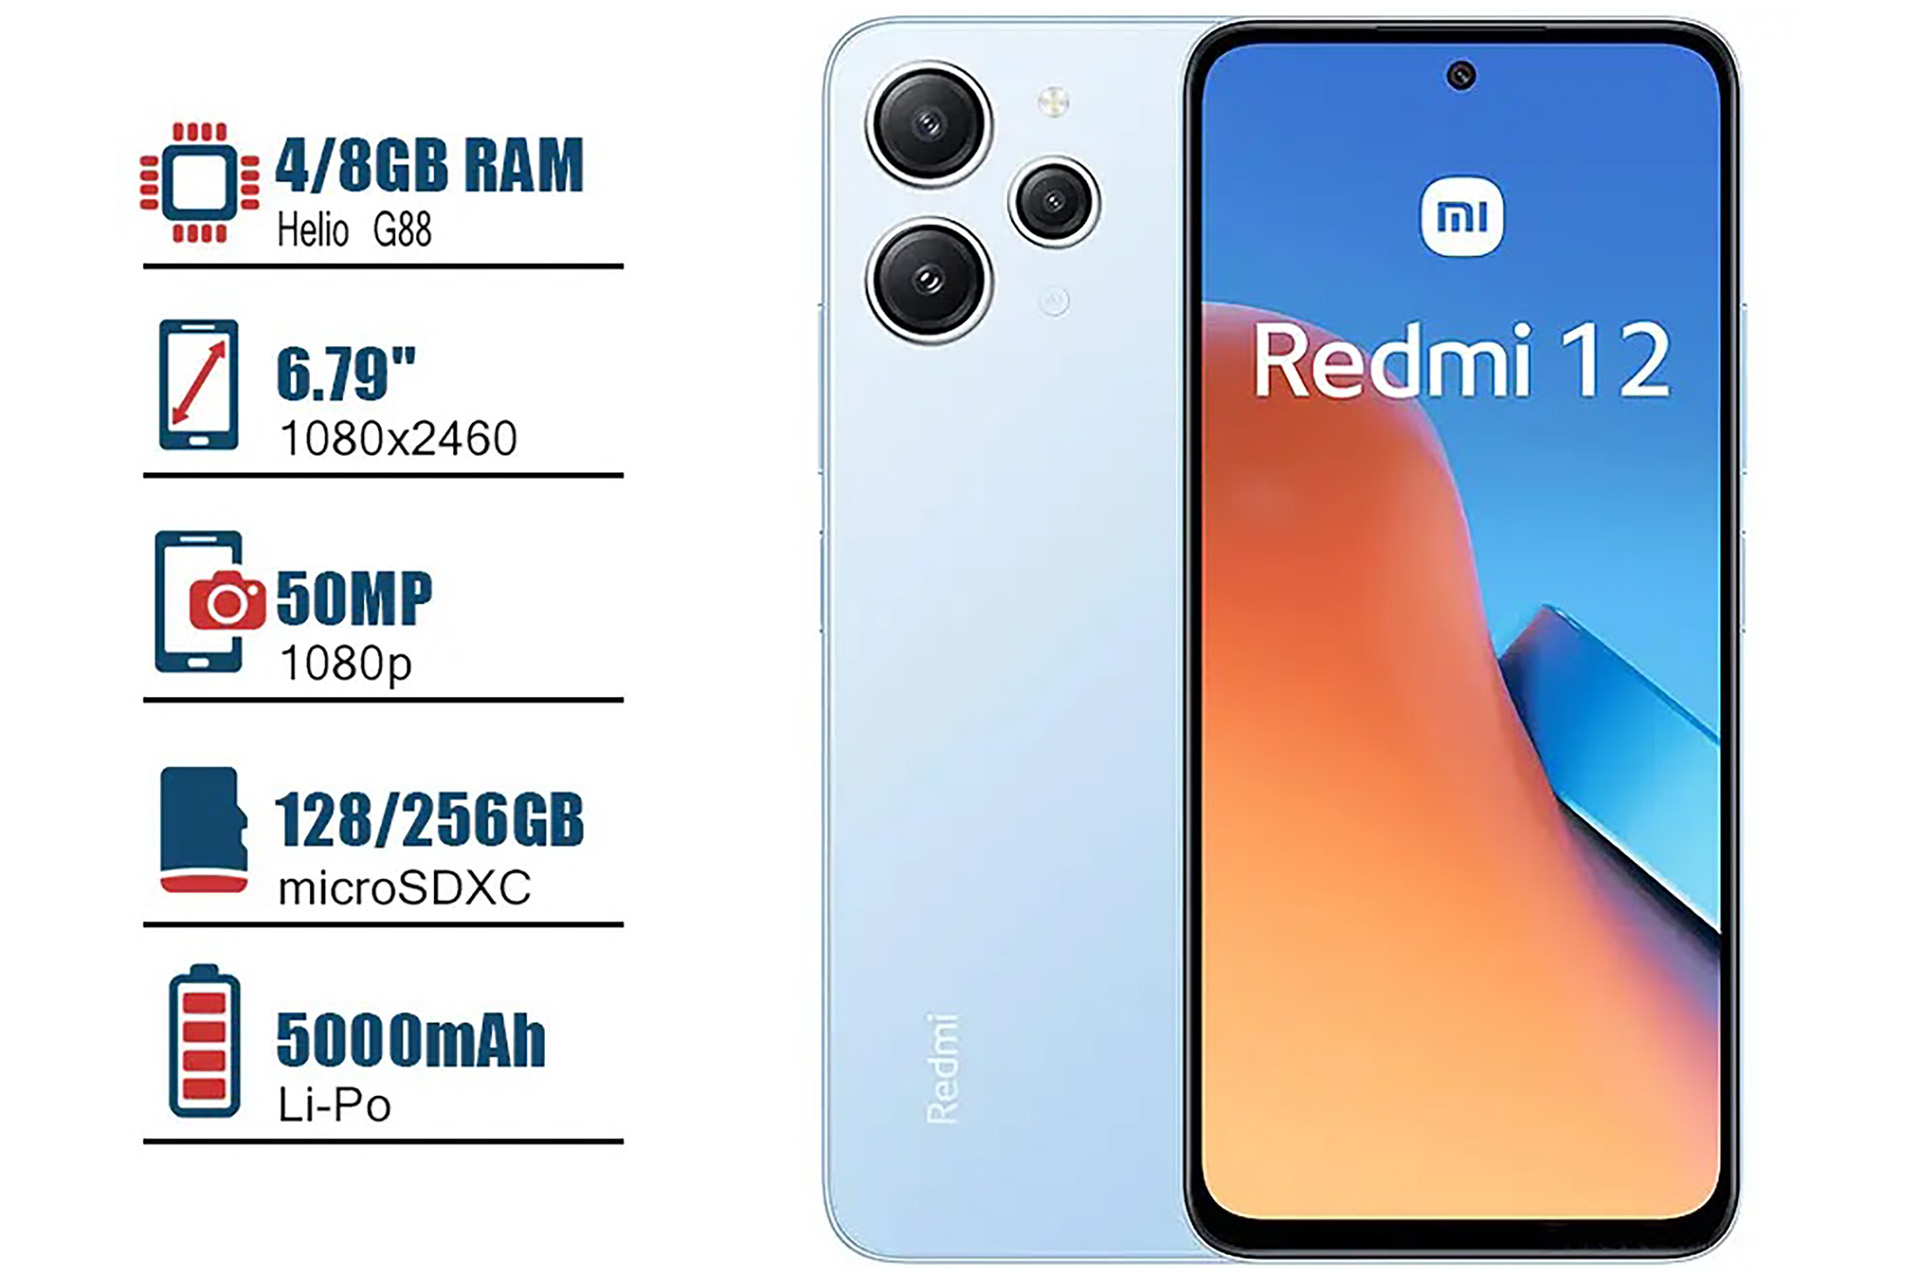 Il Telefonino - Xiaomi Redmi 12 8 g ram - 256Gb